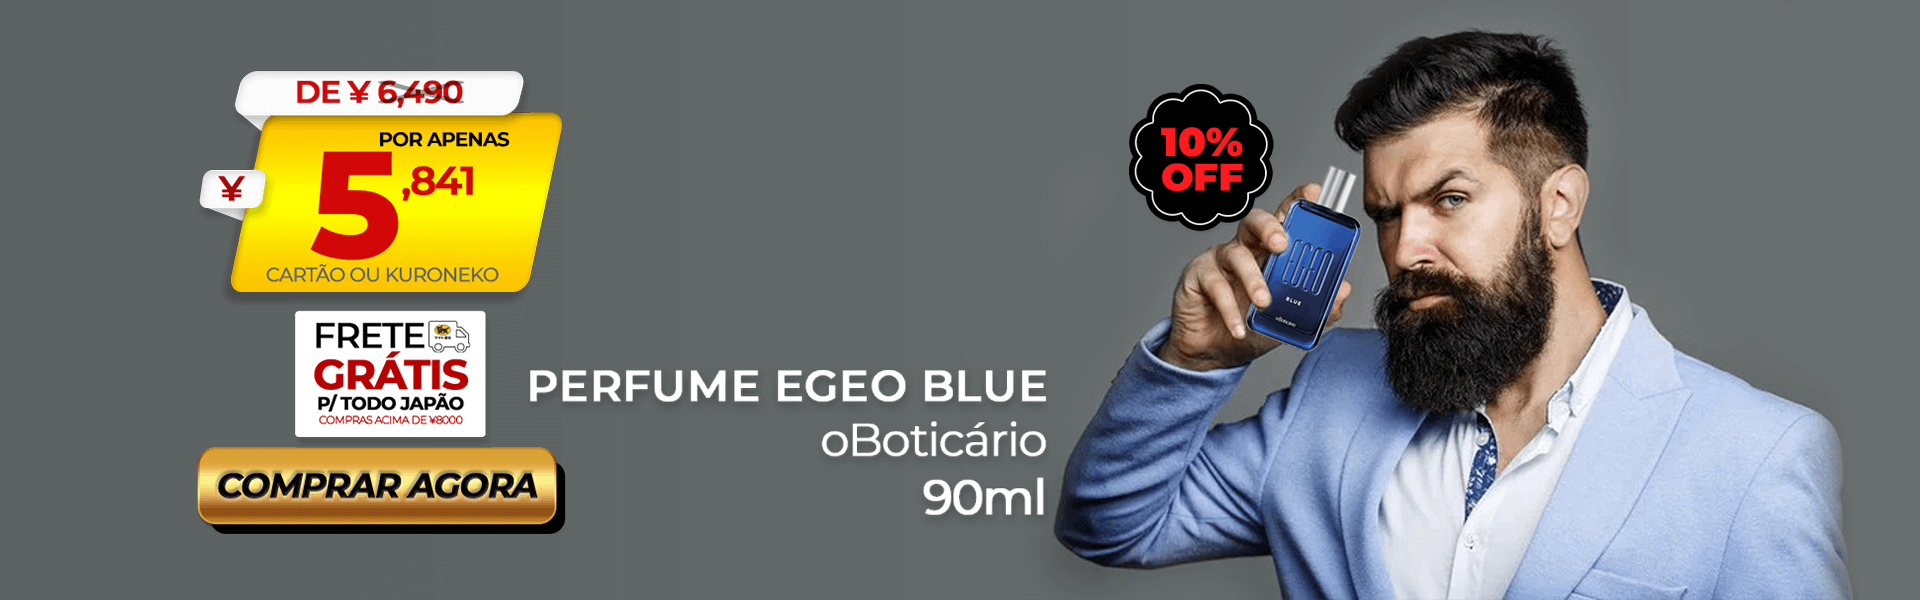 Perfume oBoticario Egeo Blue 90ml